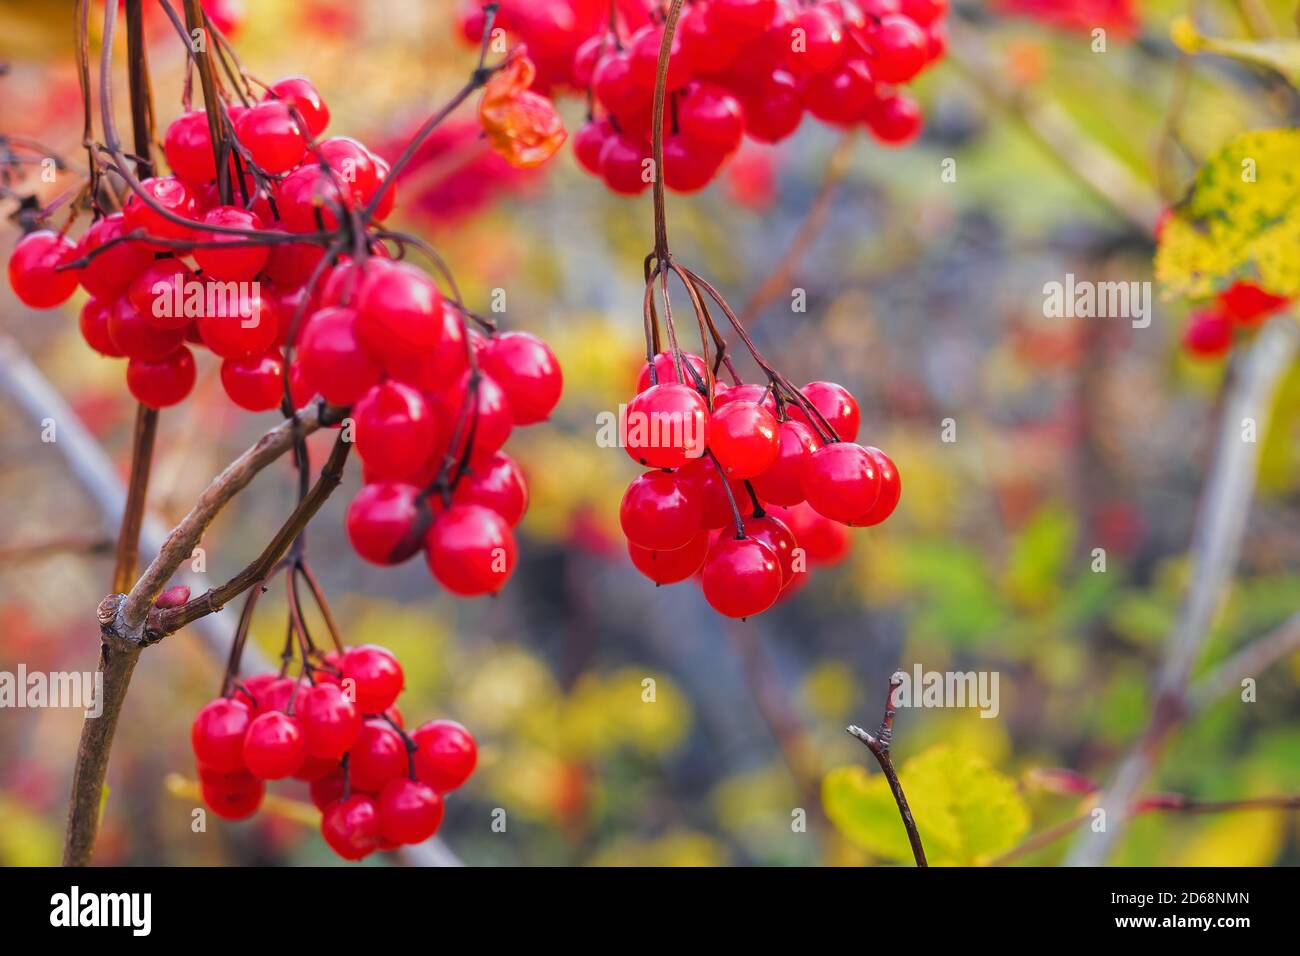 Les fruits rouges du viburnum sont suspendus sur un arbre lors d'une journée d'automne ensoleillée, avec une attention sélective. Banque D'Images